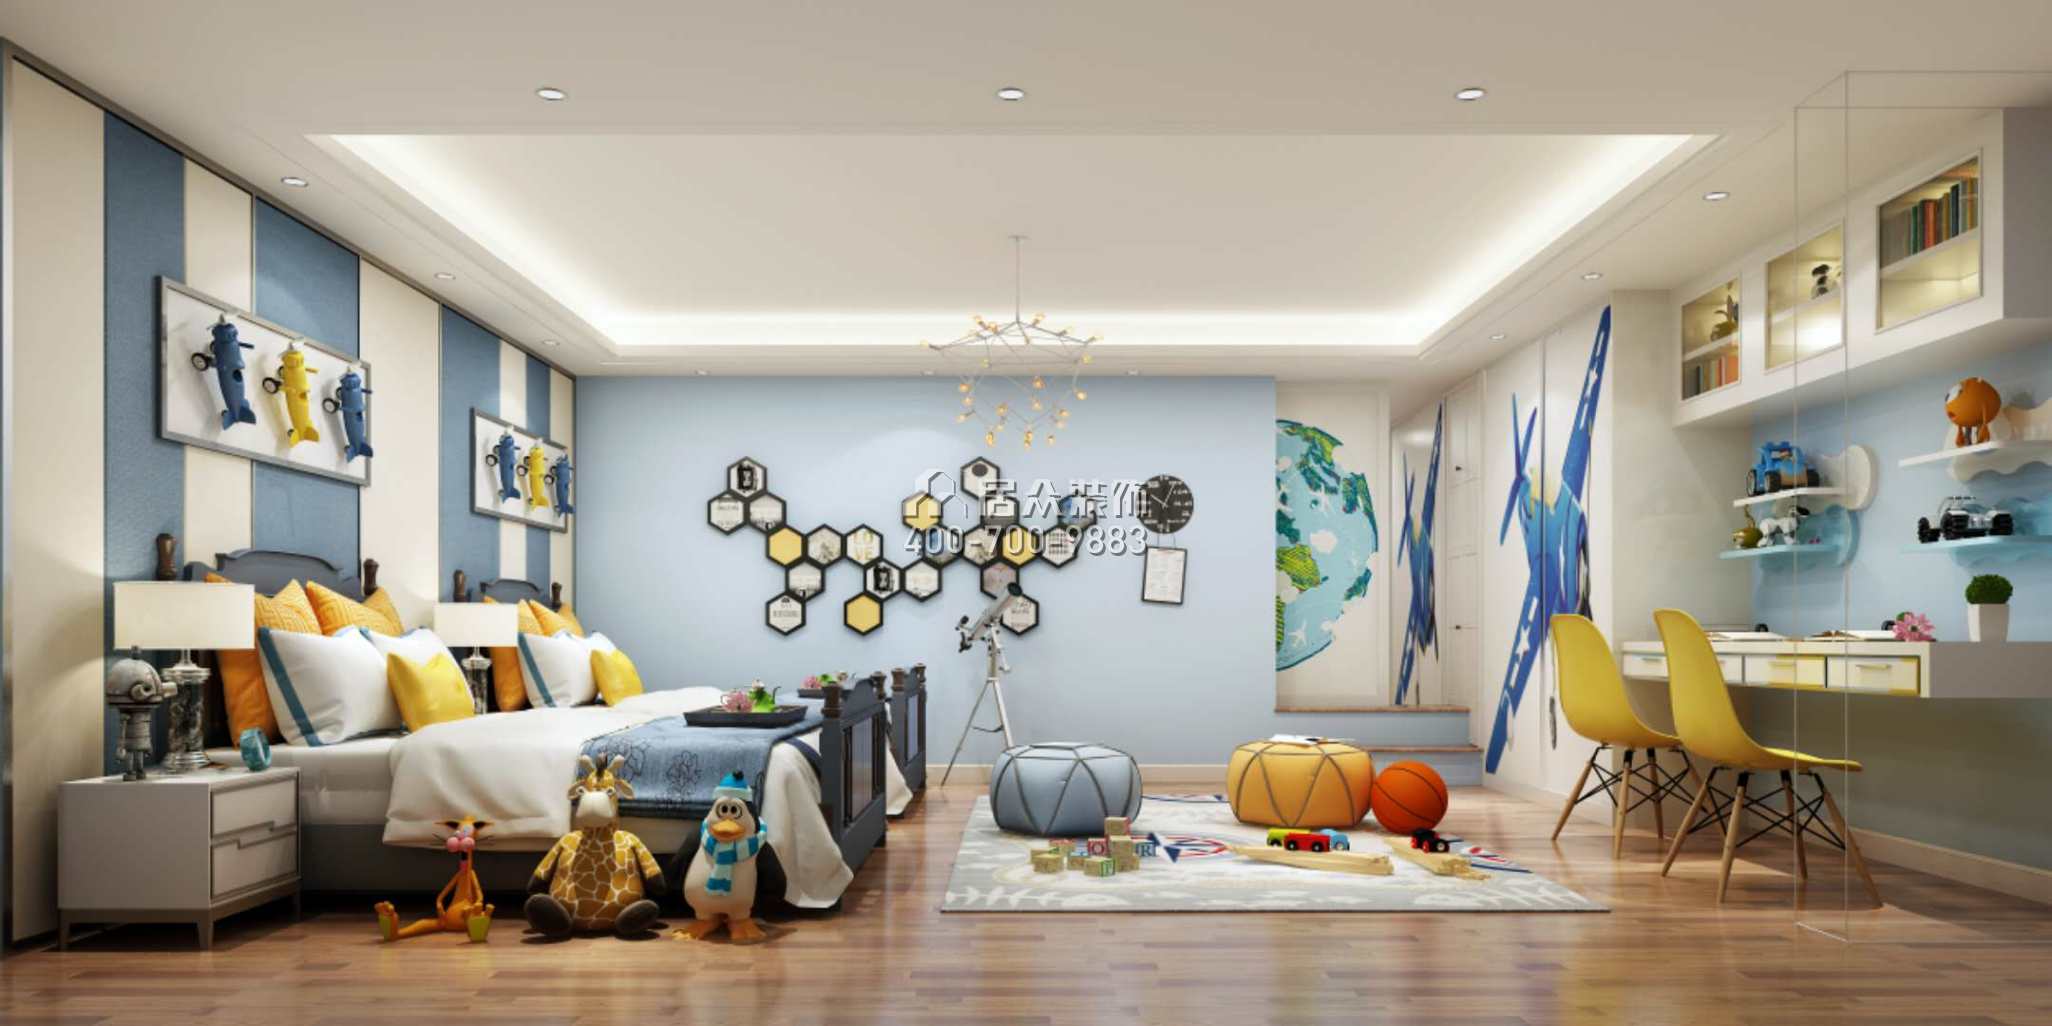 海逸豪庭尚都280平方米中式風格別墅戶型兒童房裝修效果圖